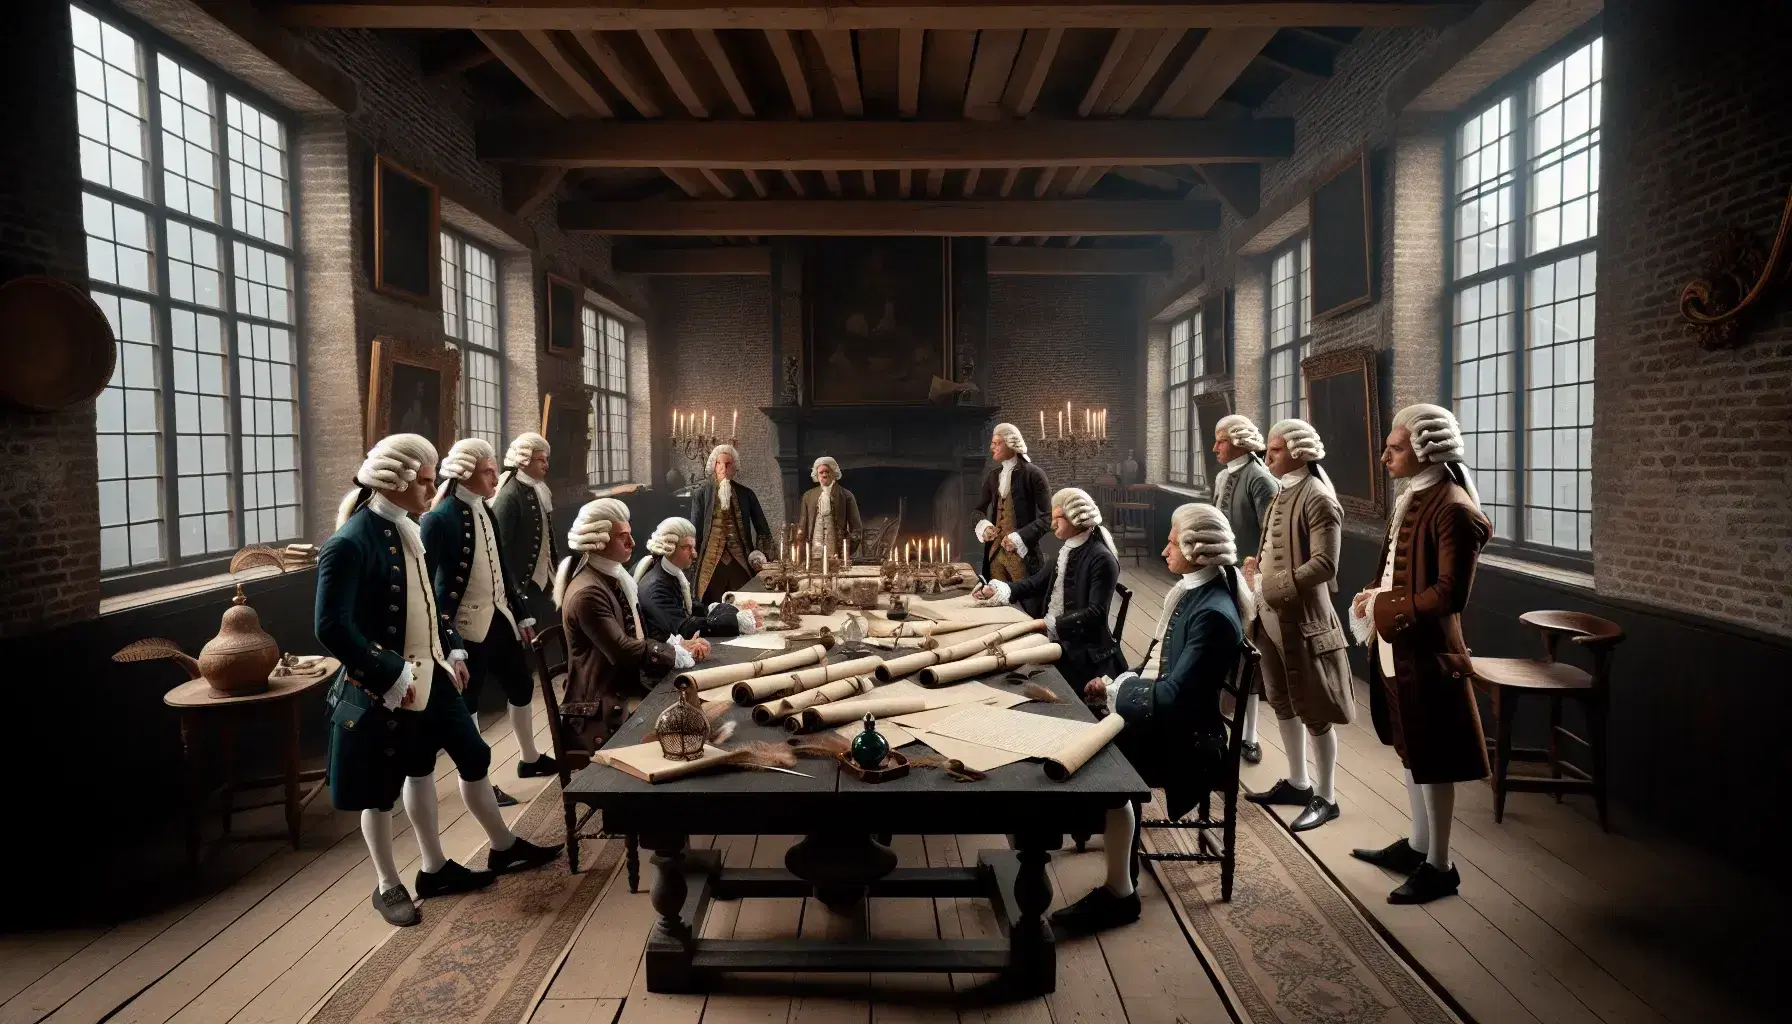 Grupo de hombres en trajes del siglo XVIII deliberando alrededor de una mesa con documentos y plumas, en una sala histórica iluminada naturalmente.